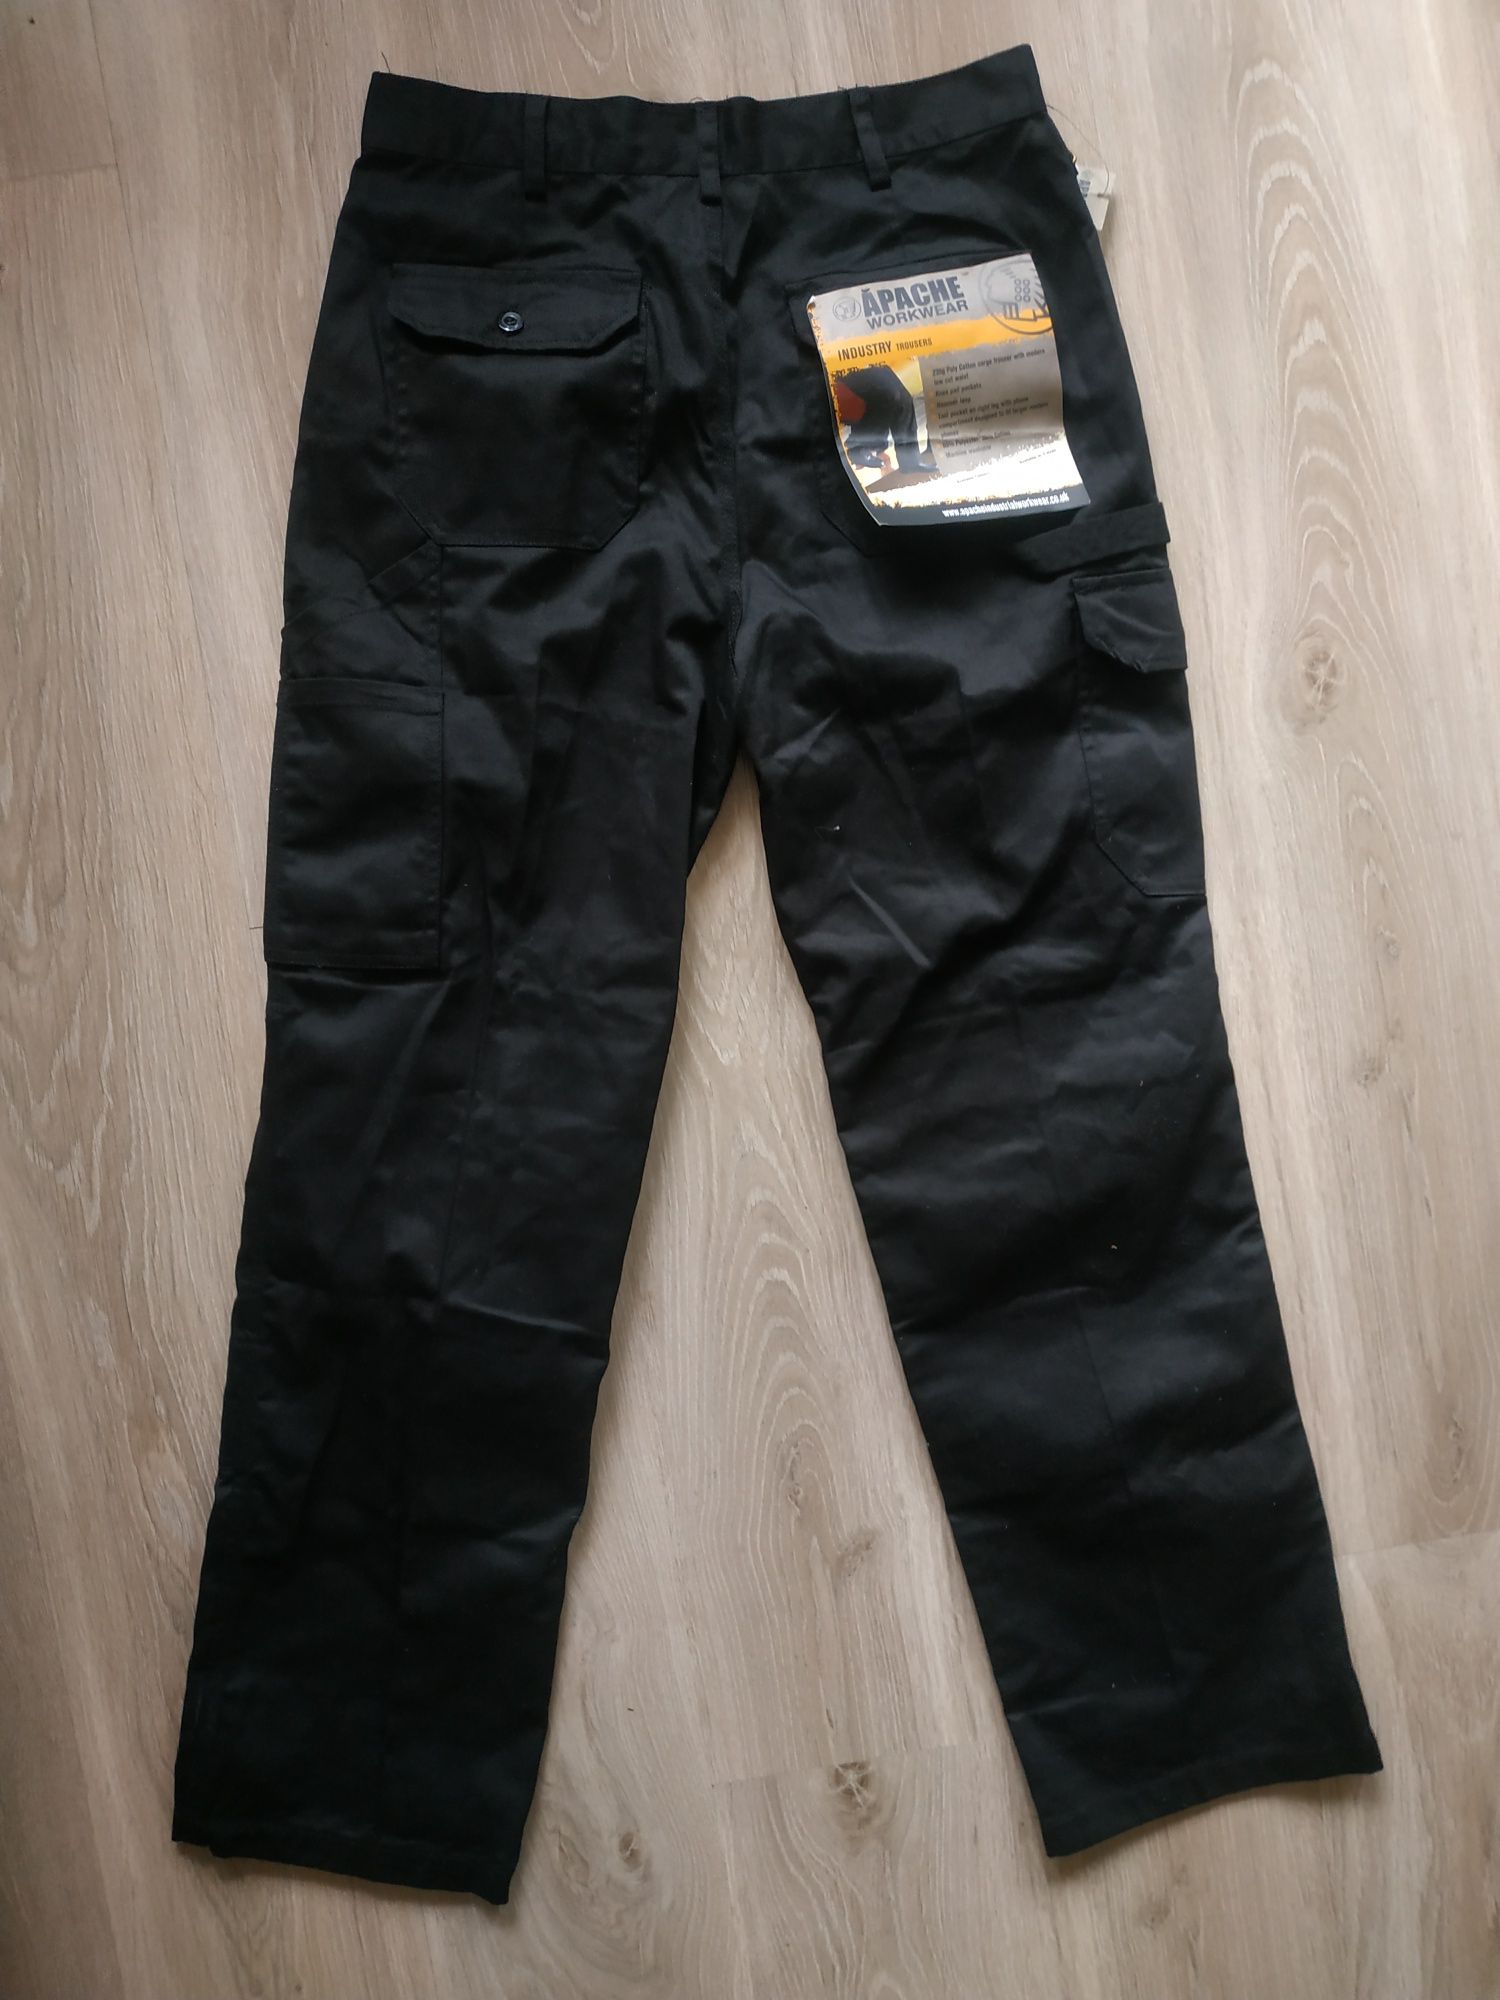 Apache work wear штаны рабочие размер 32/31, новые с биркой